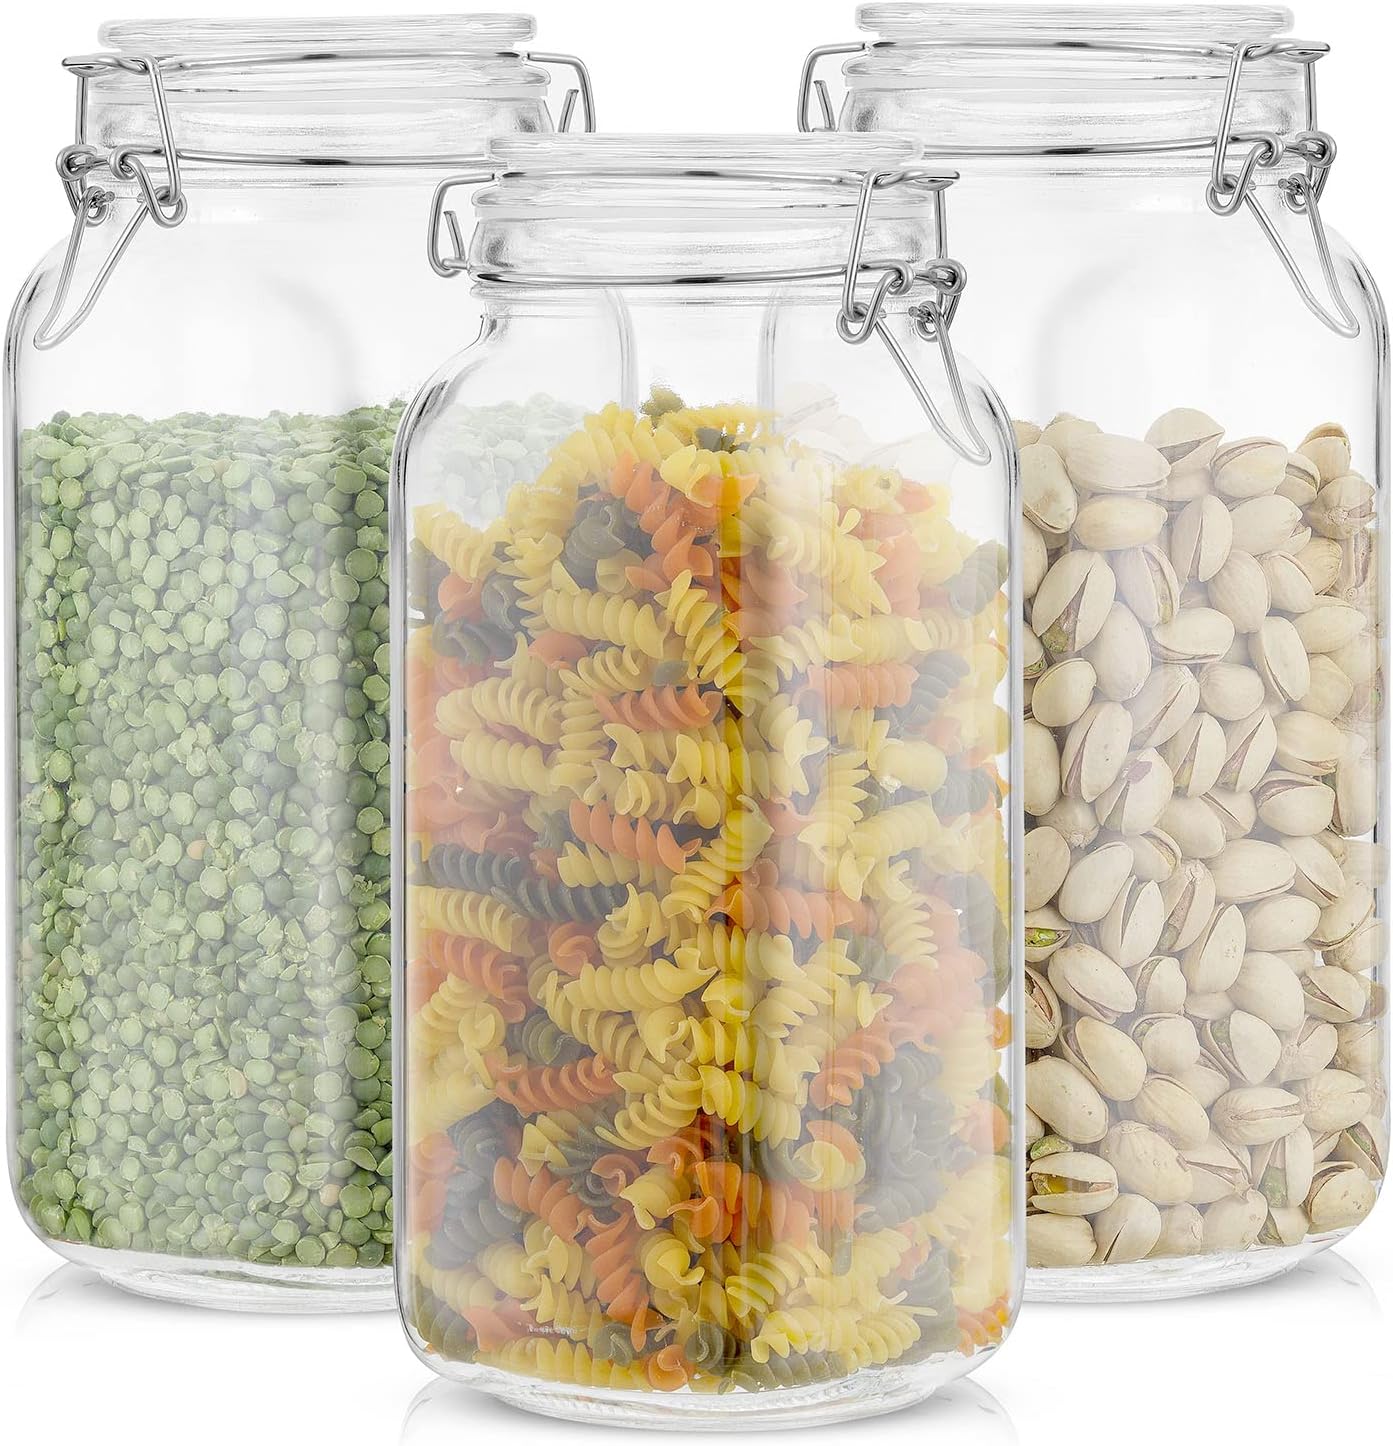  4 tarros de vidrio para almacenamiento de alimentos